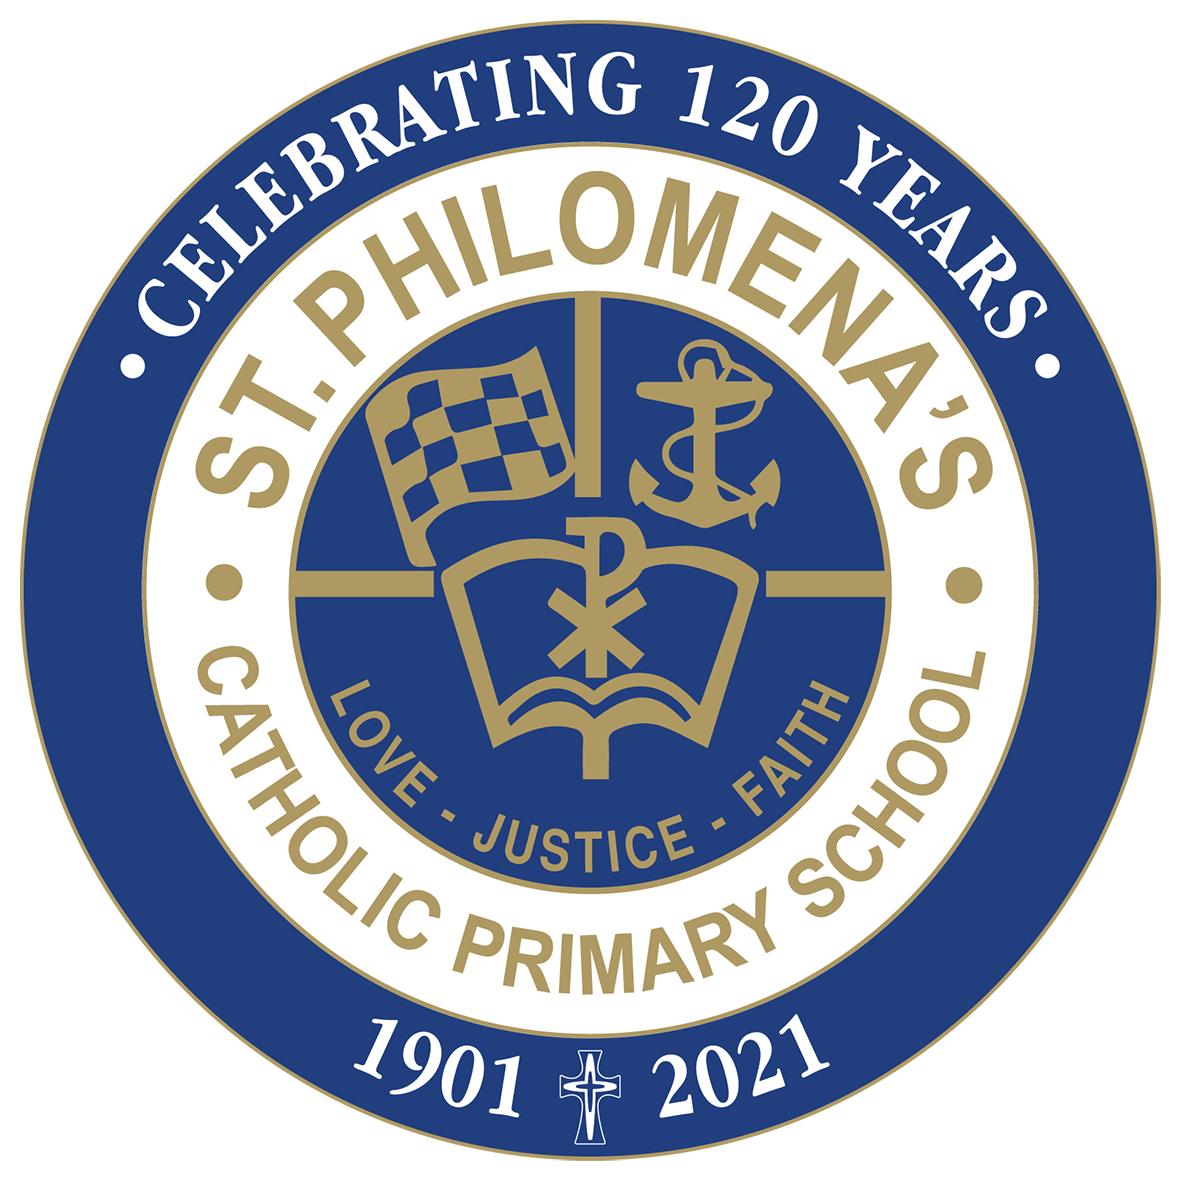 St Philomena's Catholic Primary School